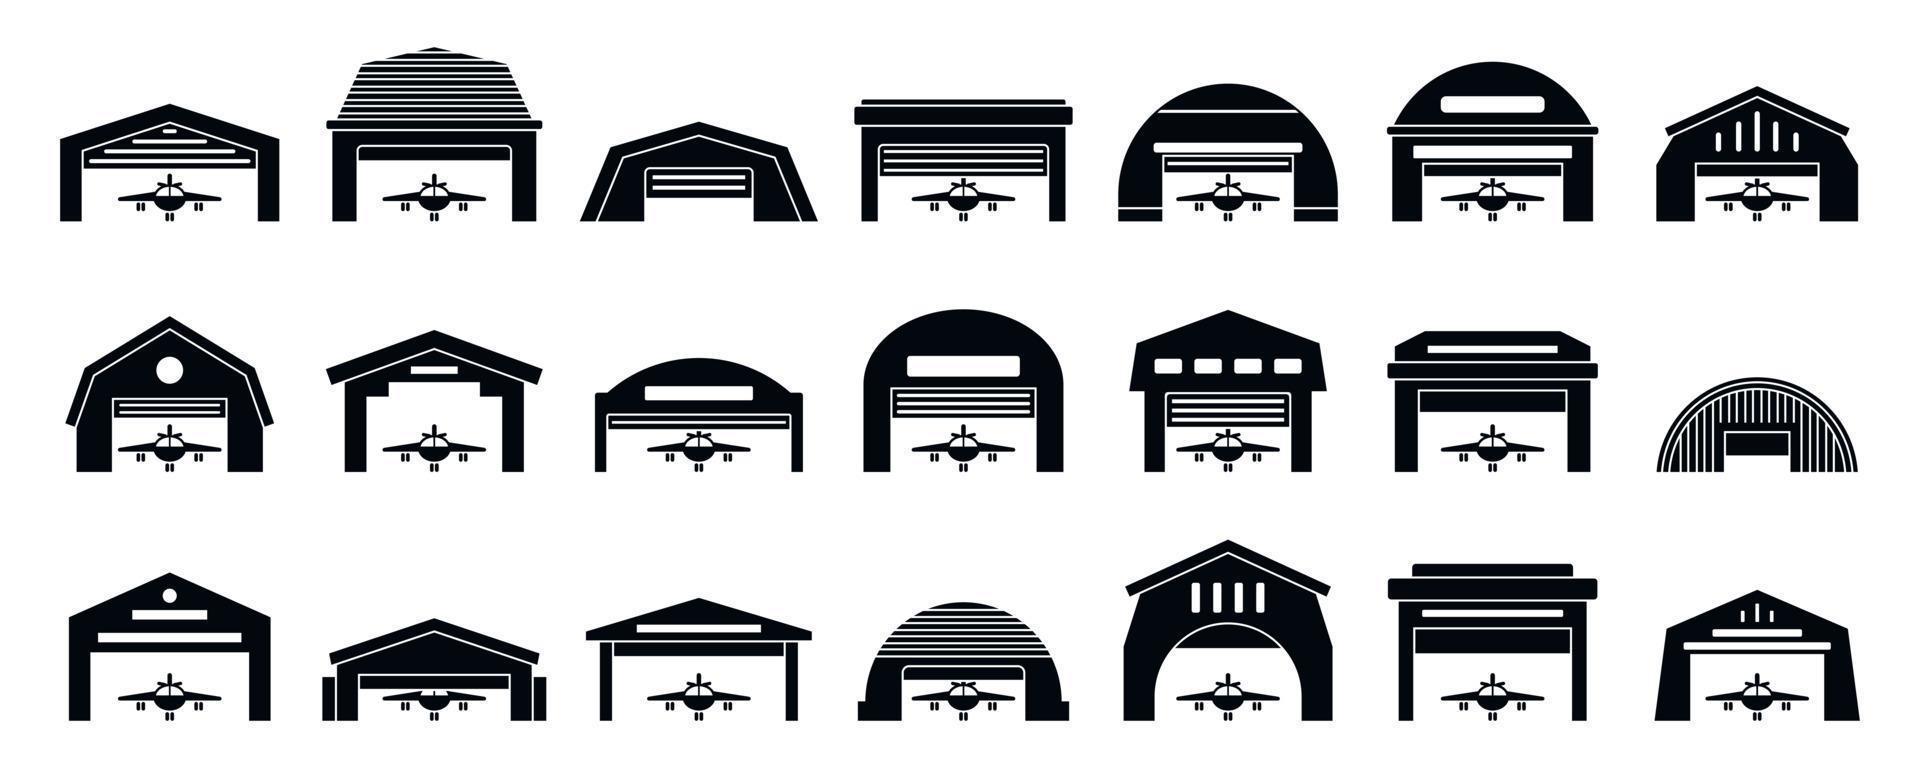 conjunto de iconos de hangar, estilo simple vector